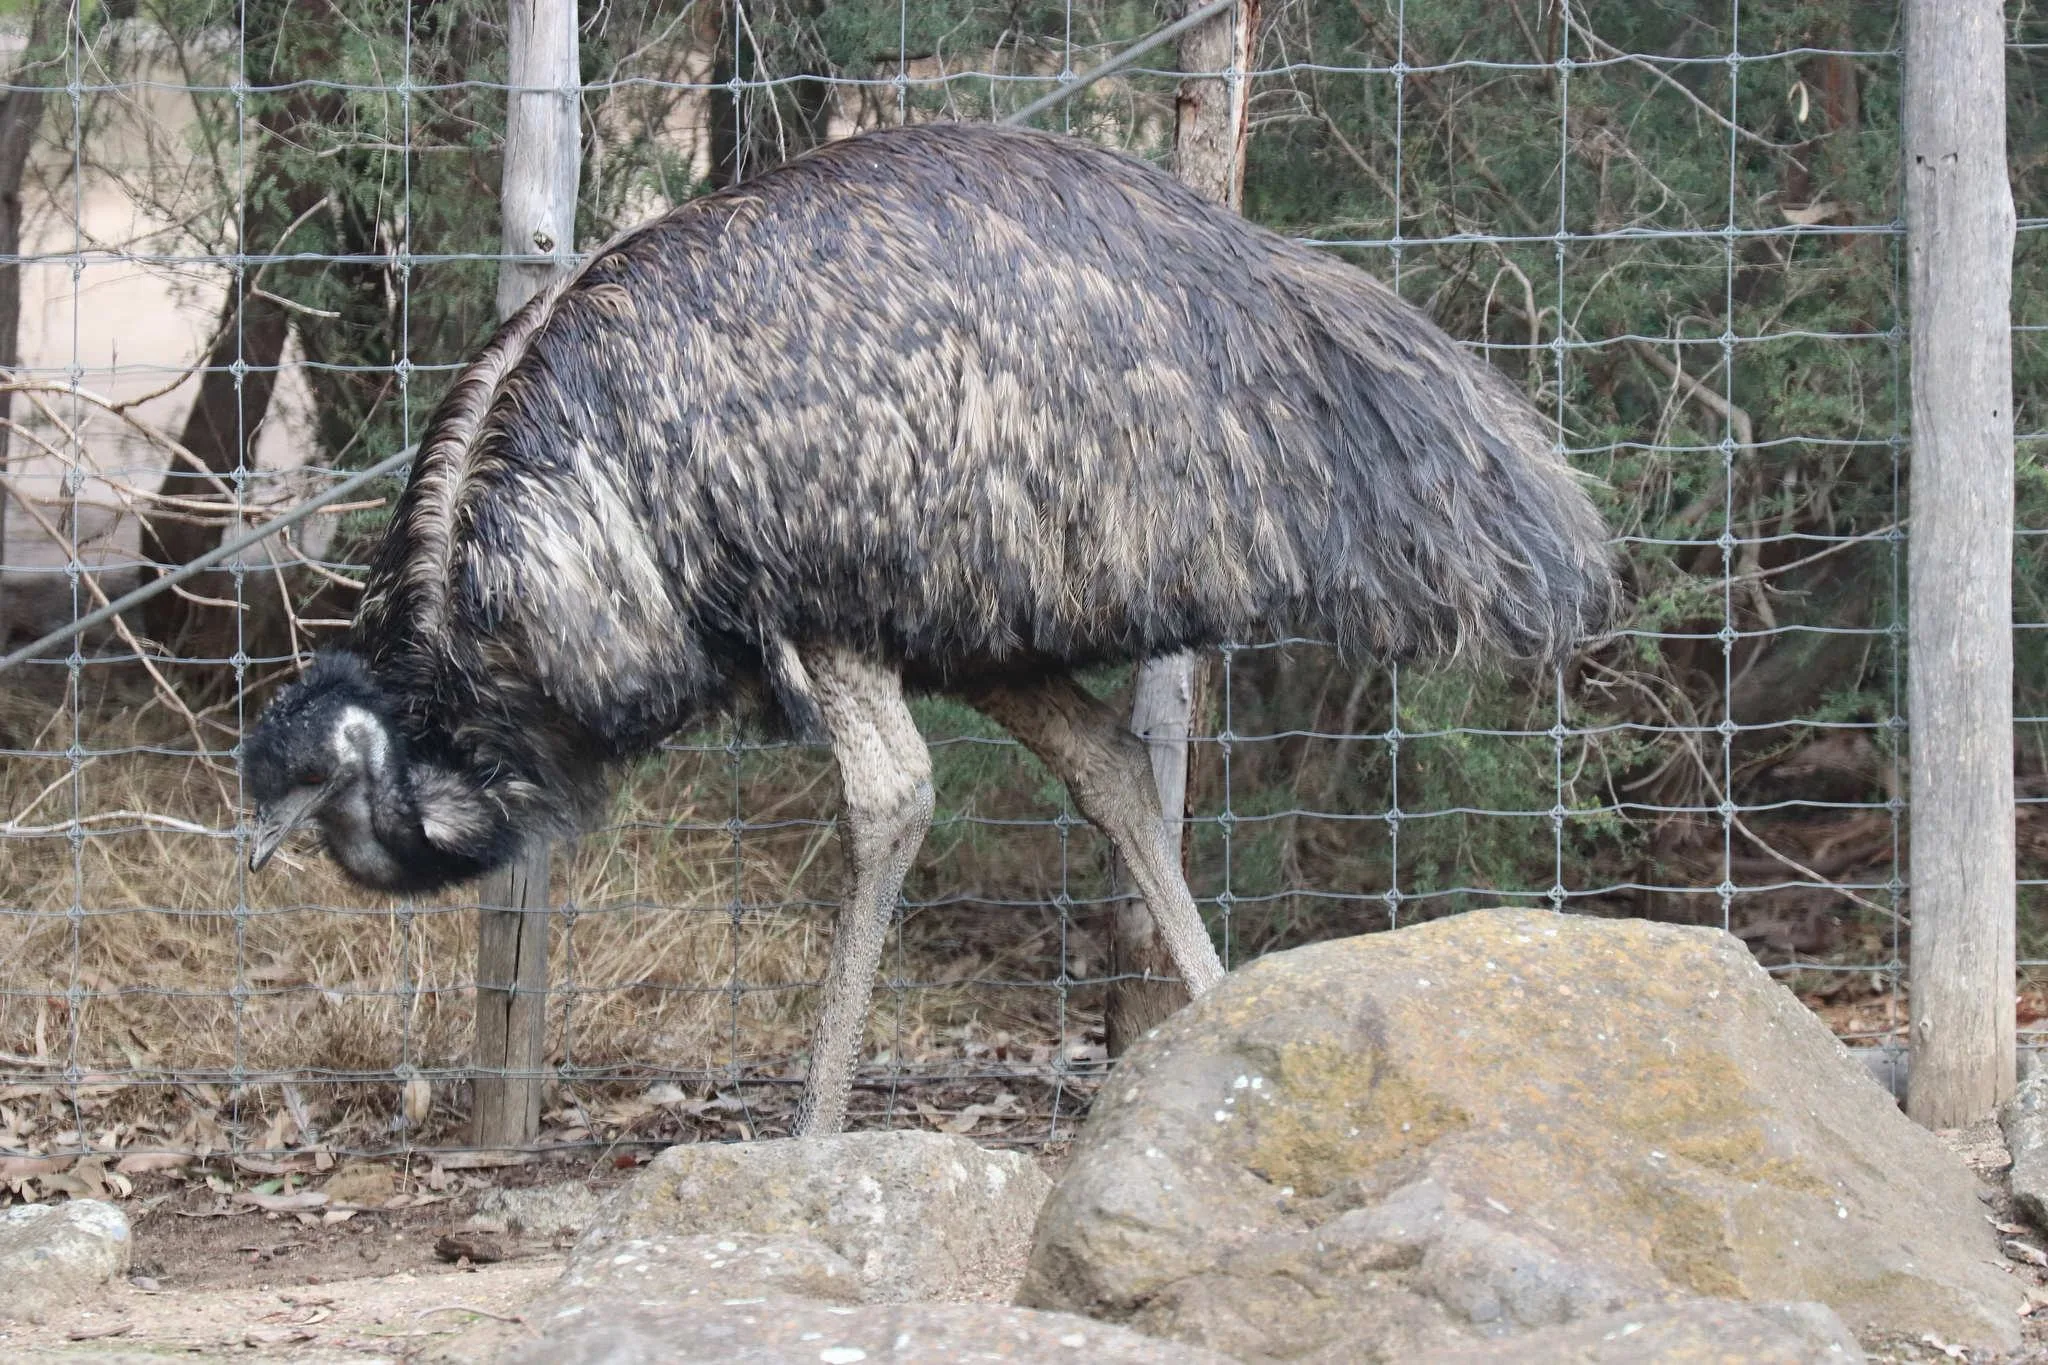 47 photos of Emu